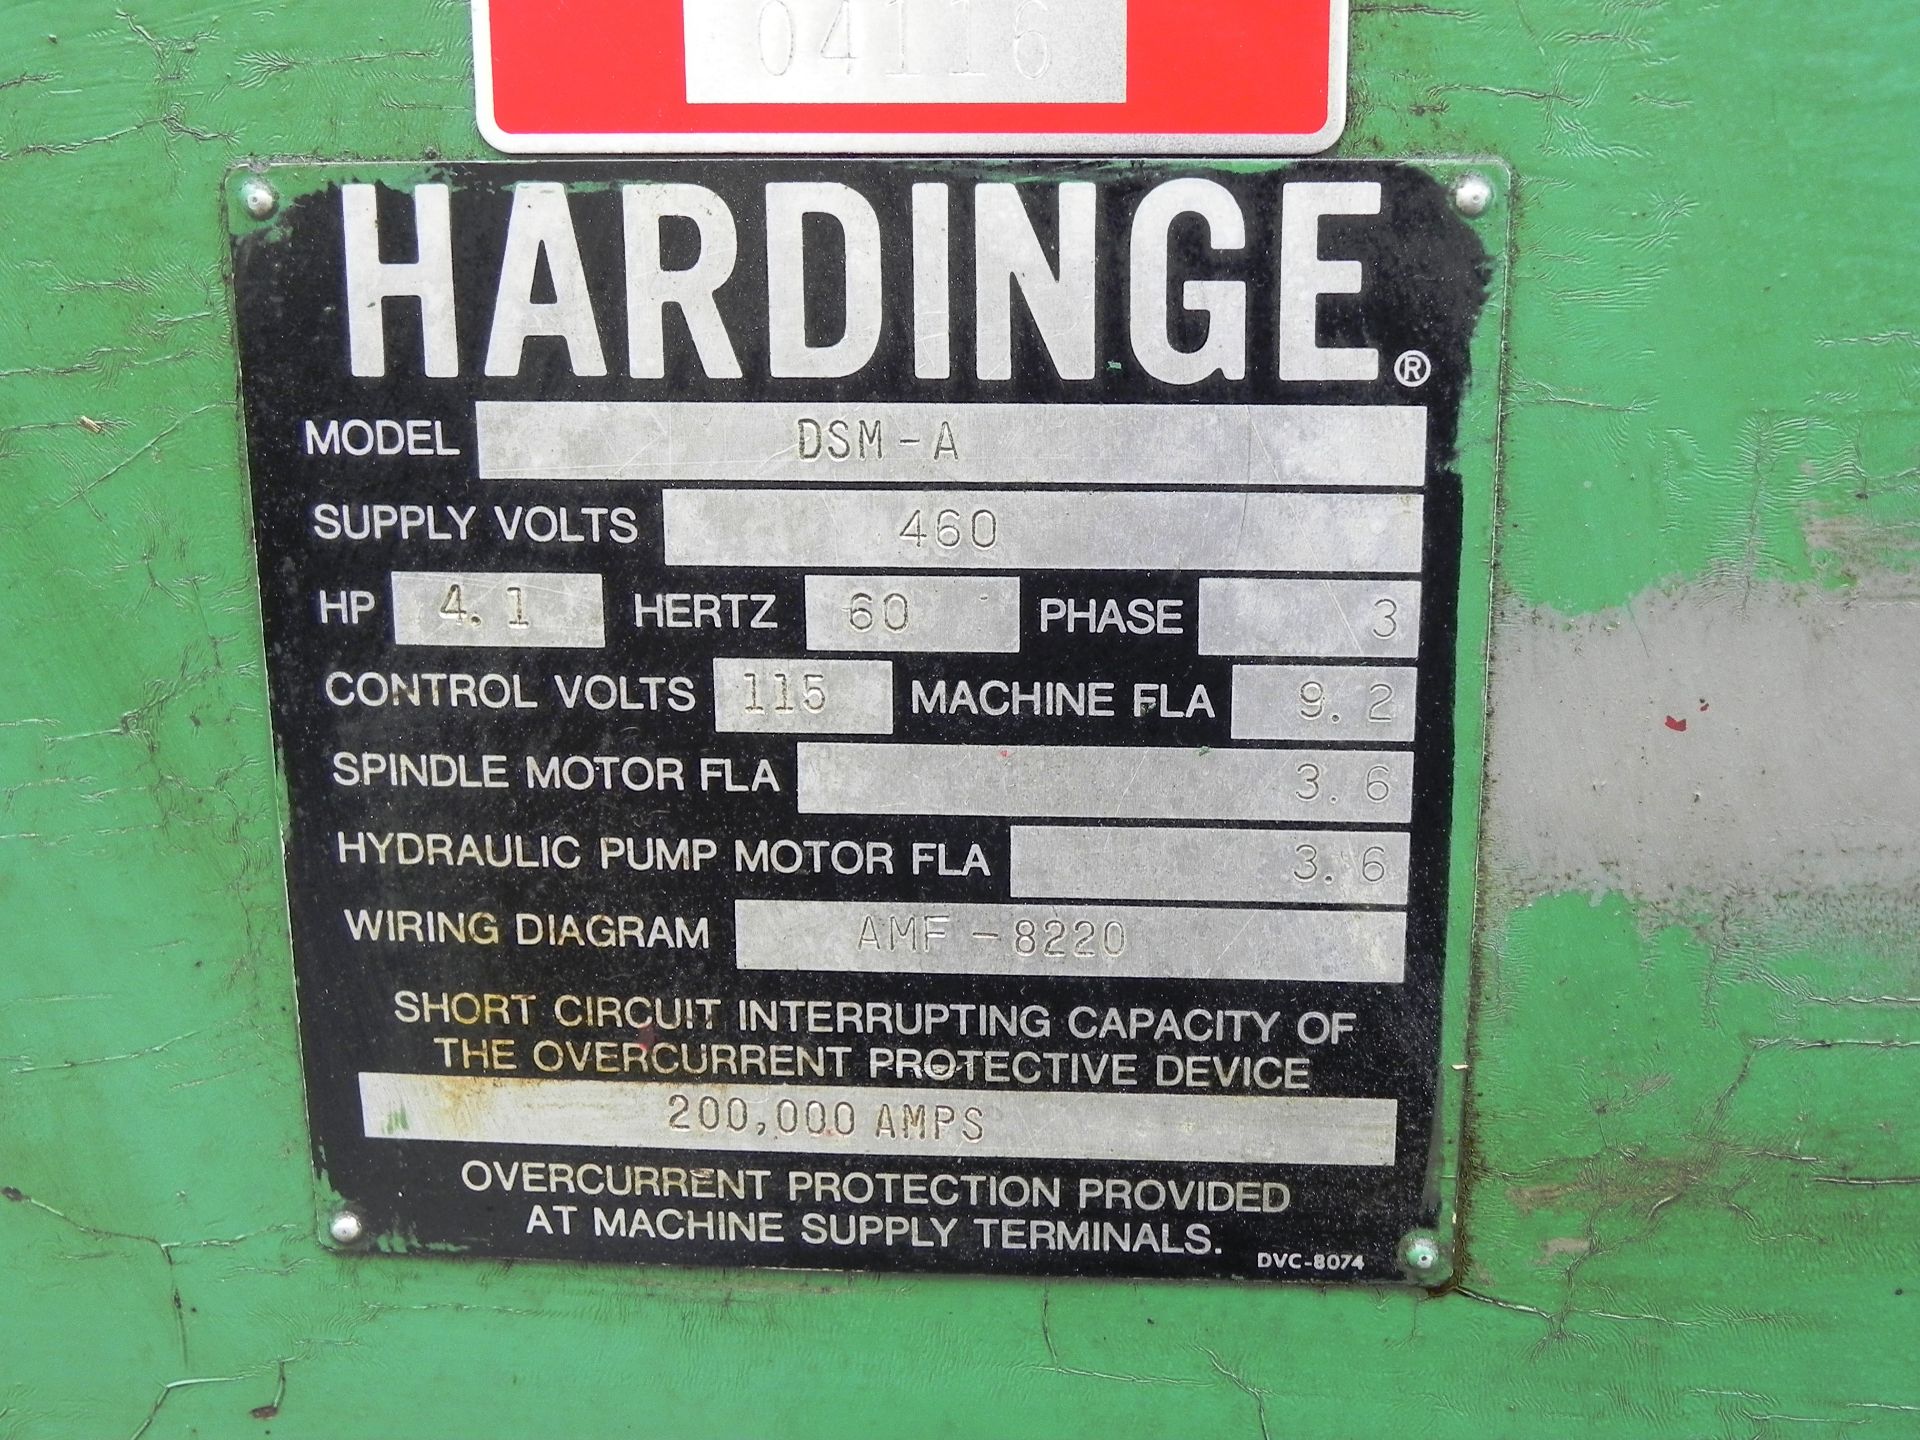 Hardinge DSM-A Turret Lathe - Image 4 of 7